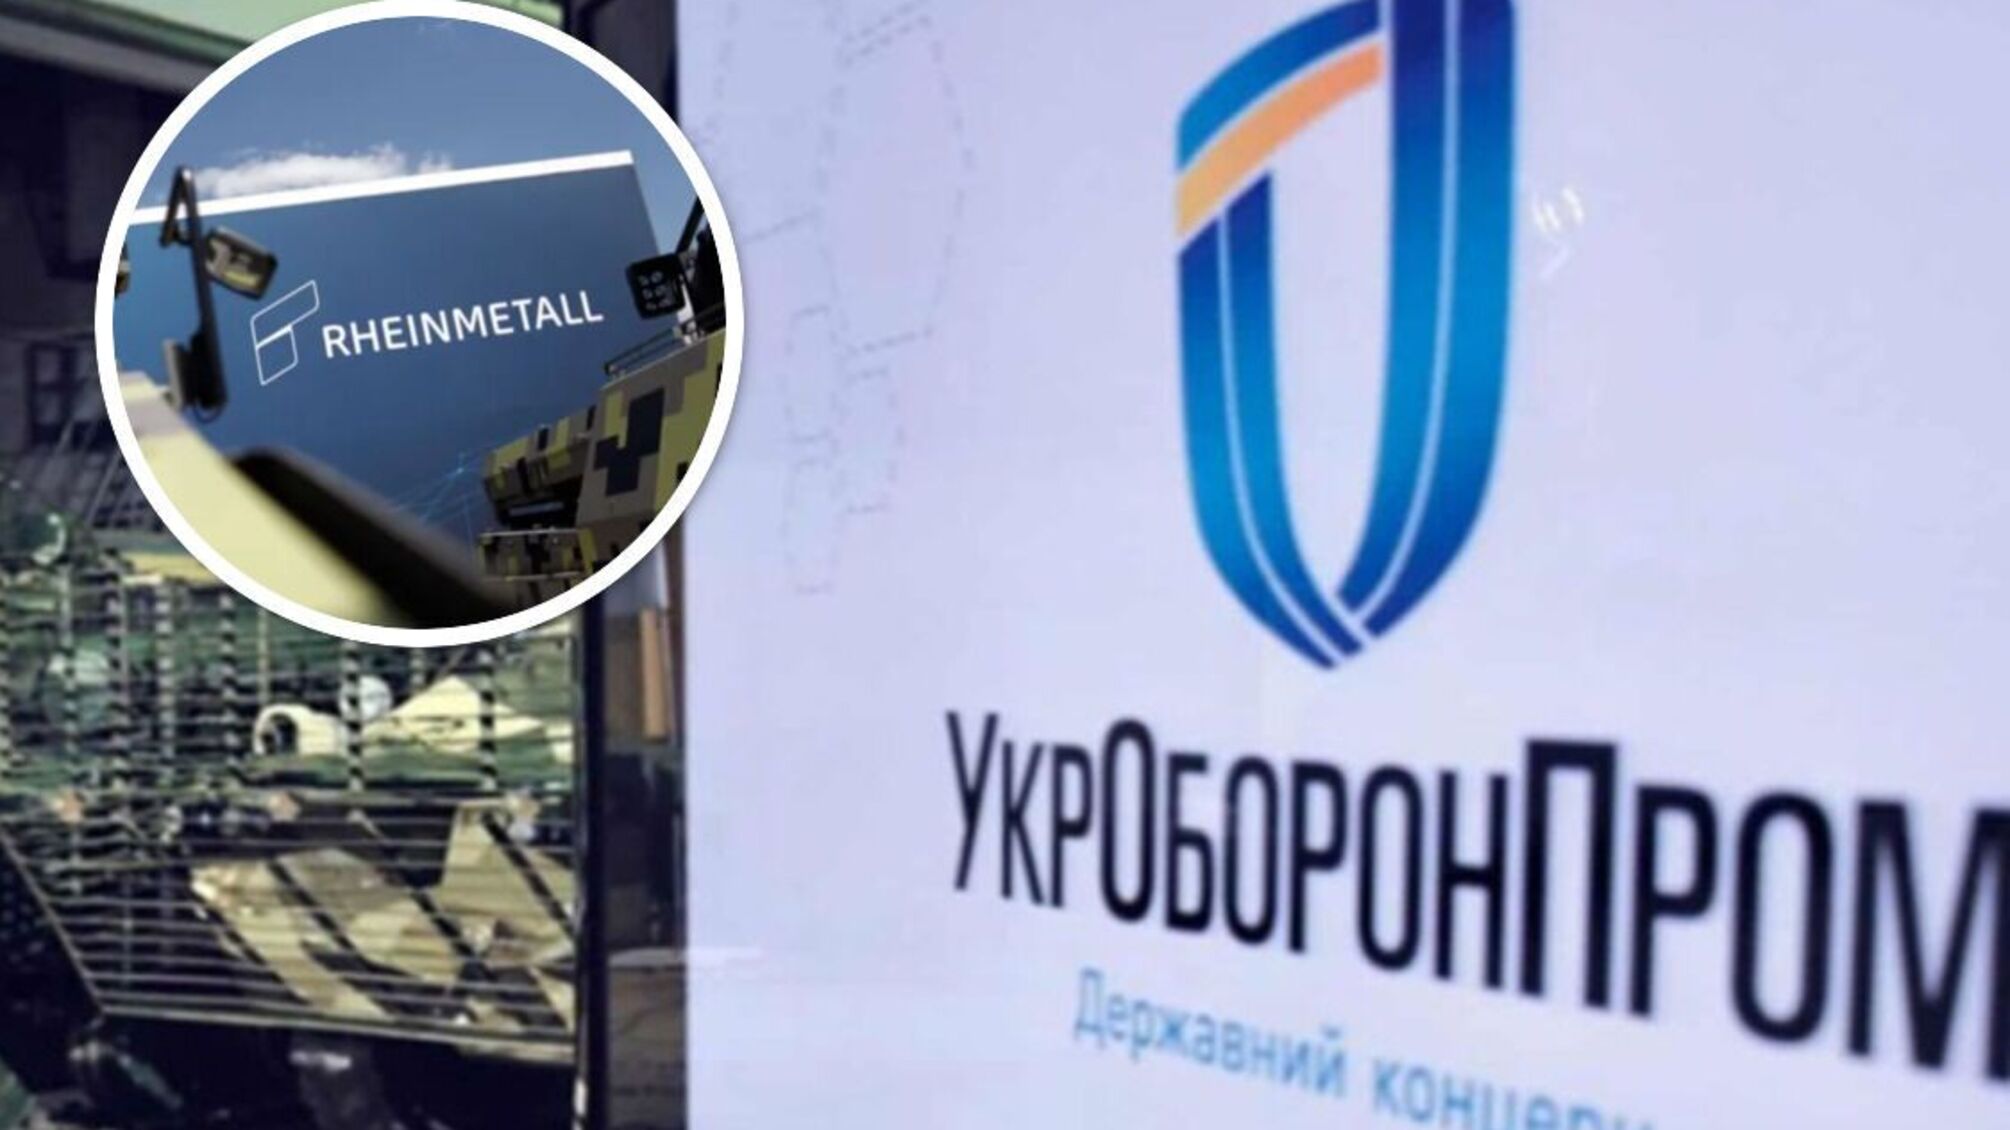 Гендиректор 'Укроборонпрома' Сметанин: Совместно с Rheinmetall мы производим большое количество вооружения и военной техники